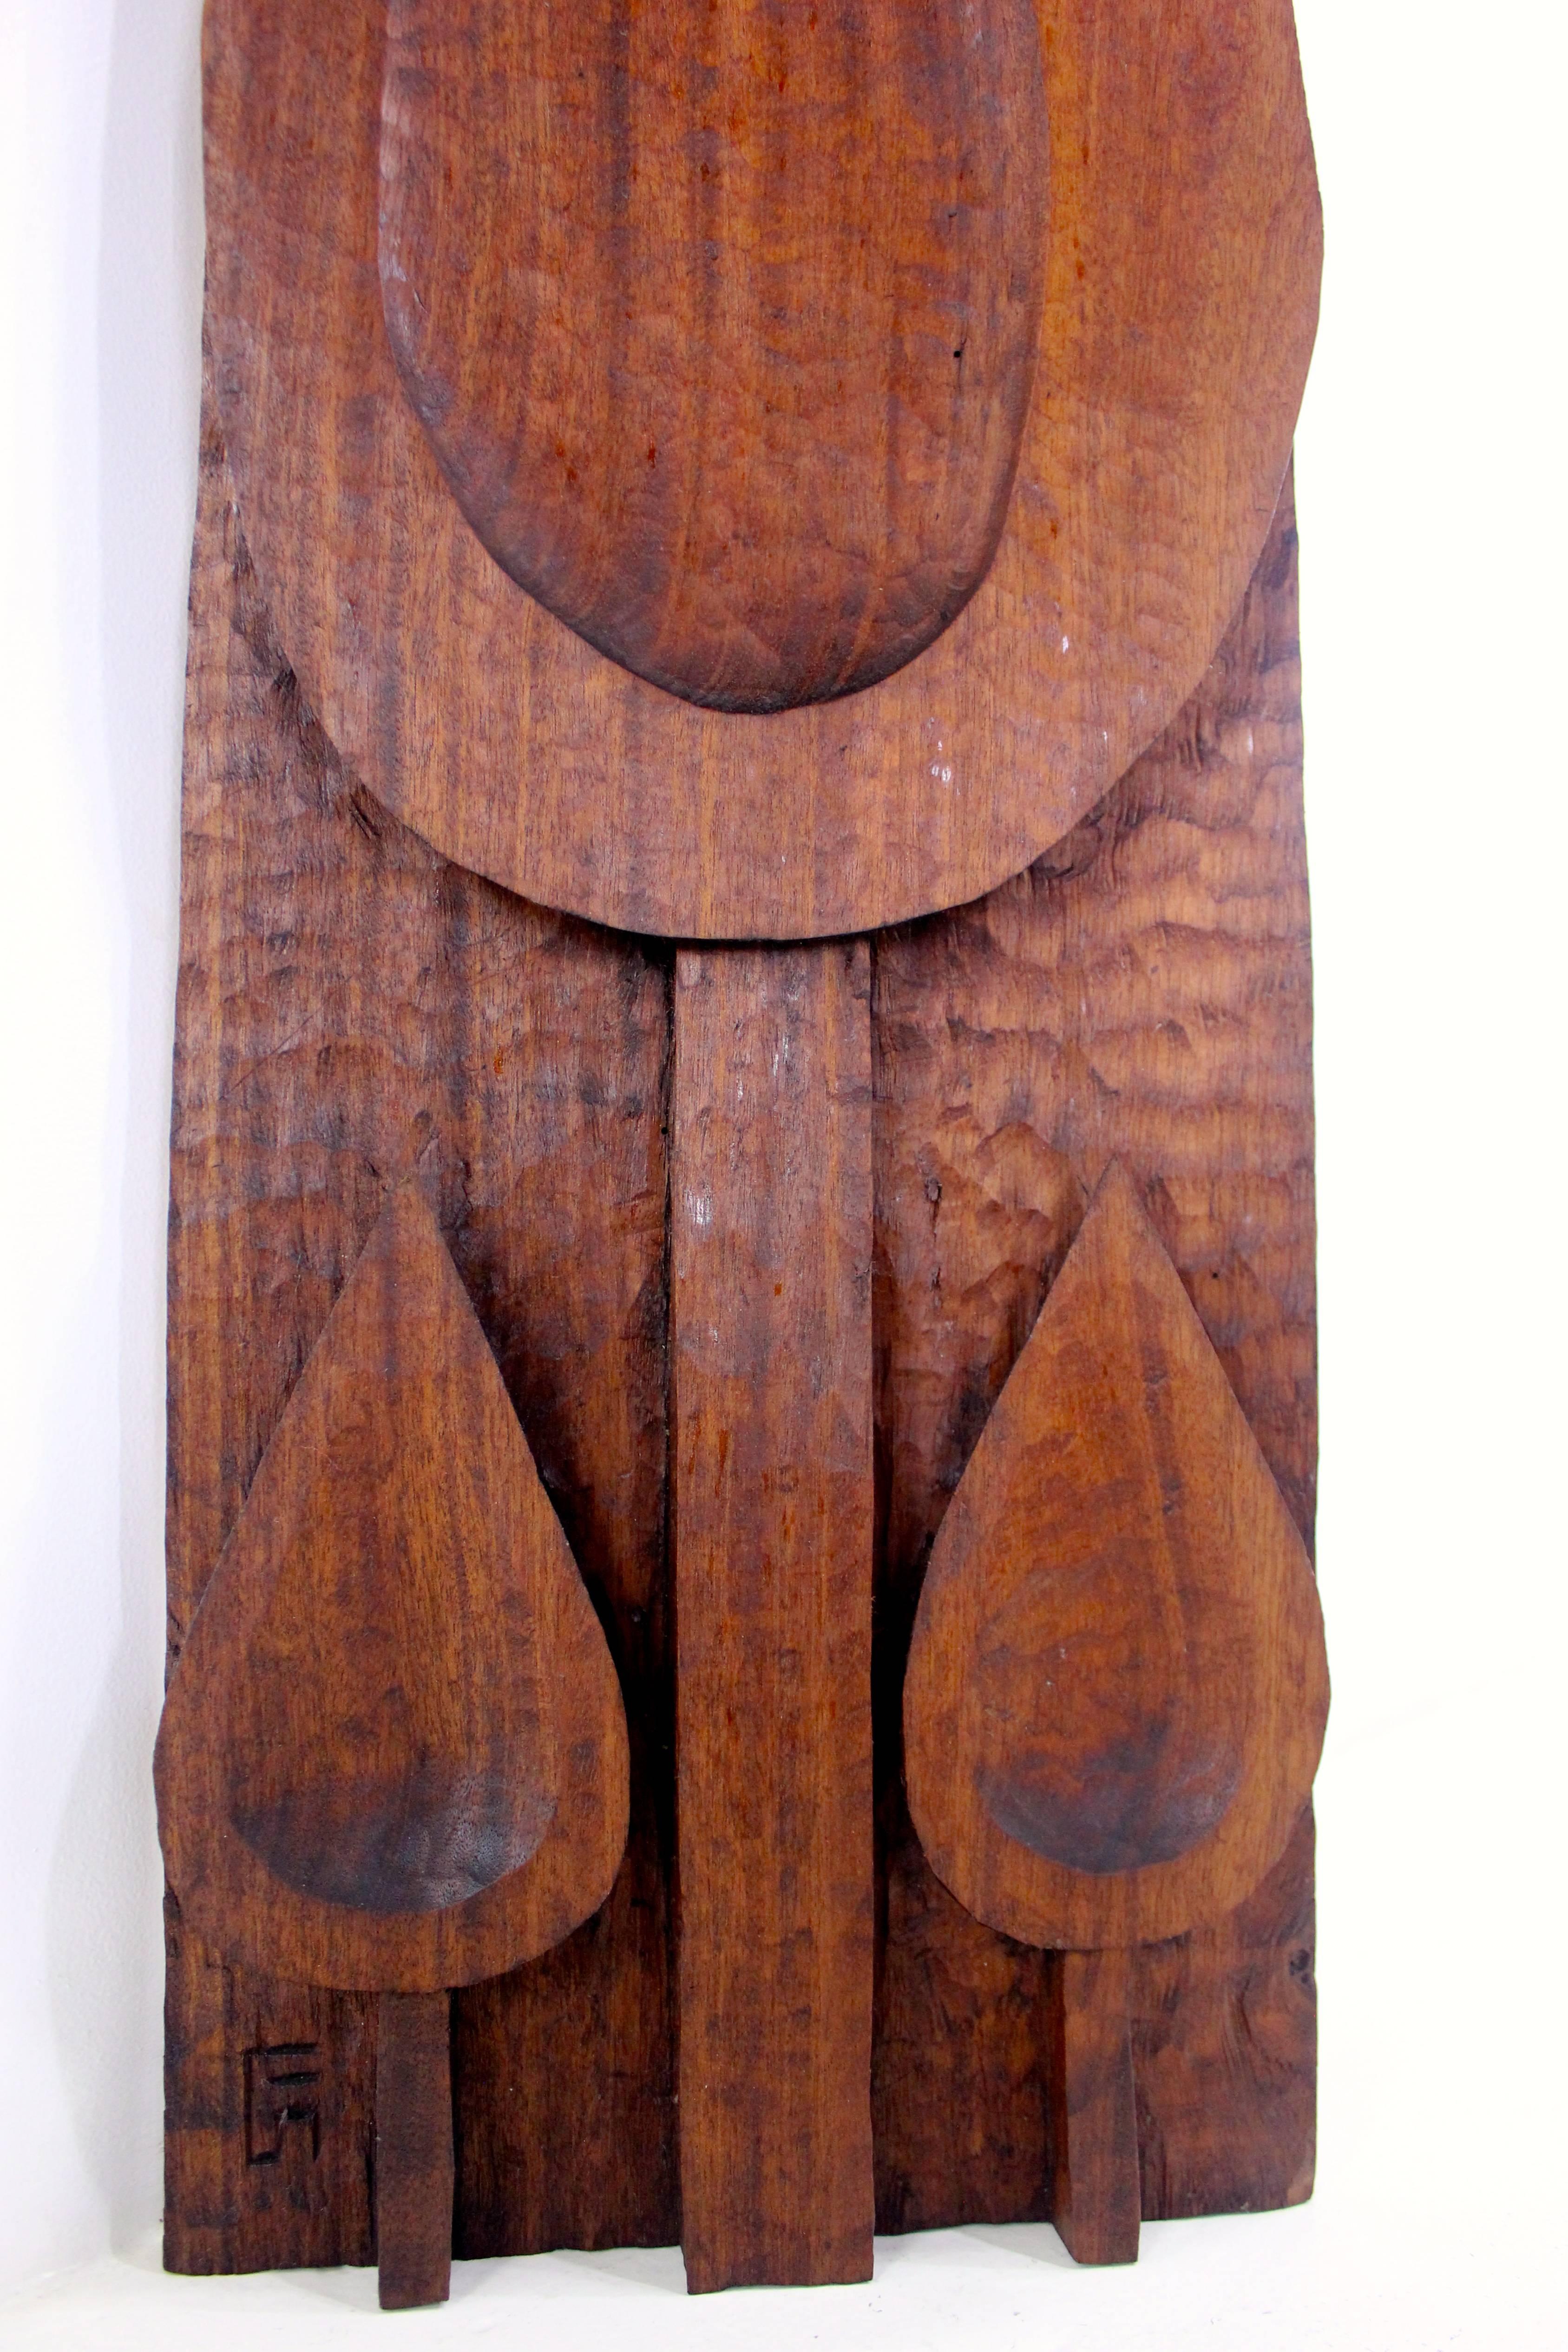 setziol wood panels